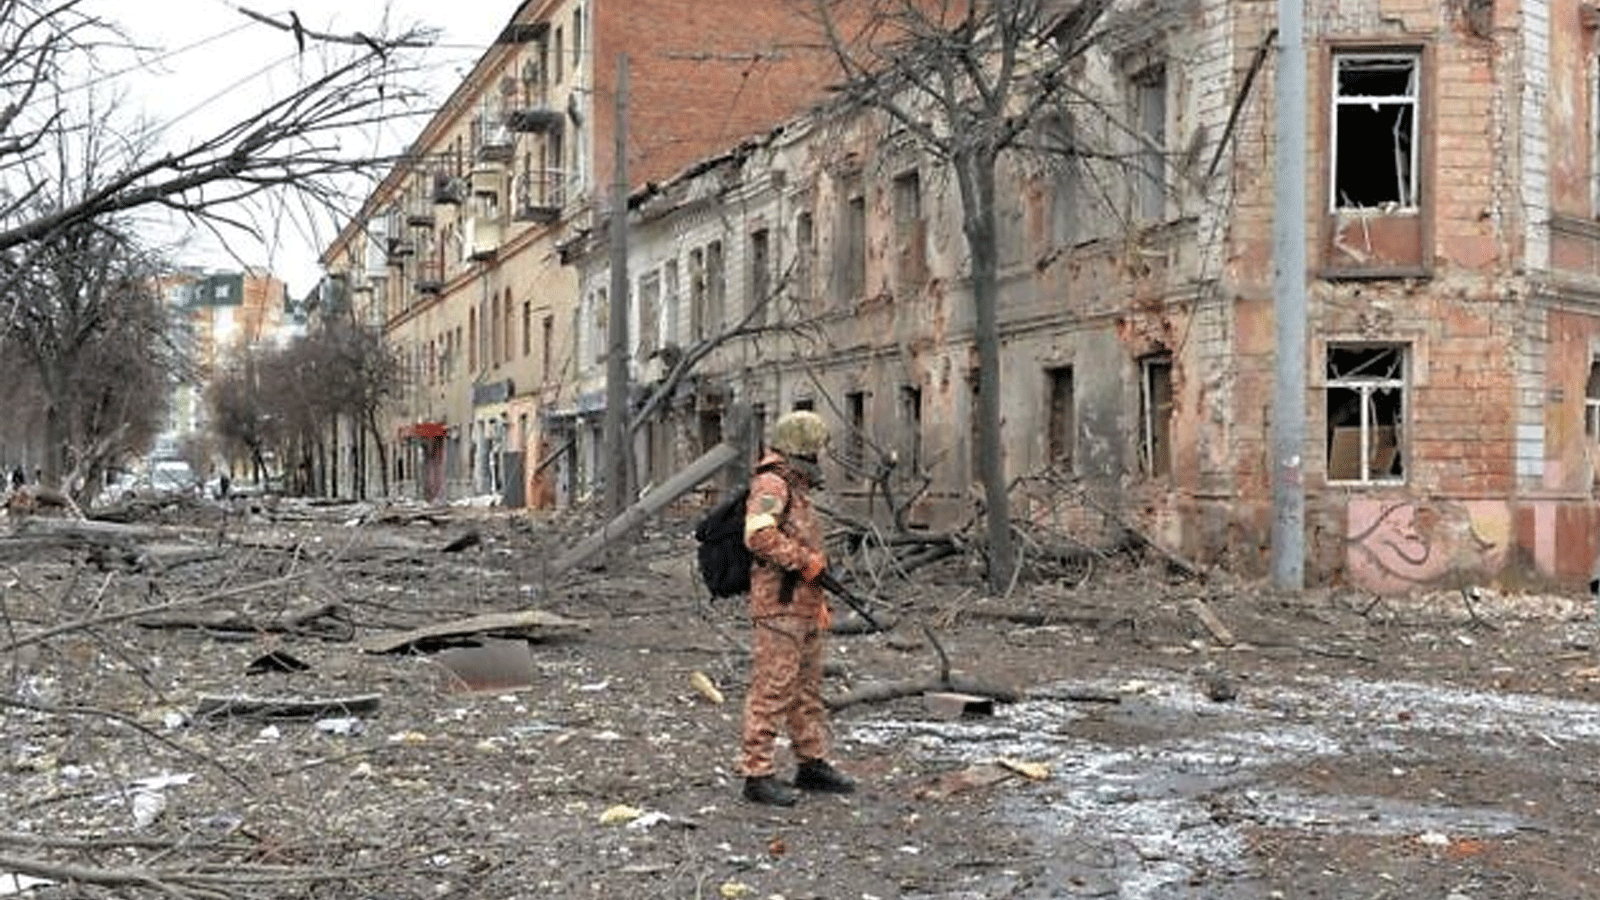 عضو في قوات الدفاع الإقليمية الأوكرانية ينظر إلى الدمار بعد قصف في خاركيف ثاني أكبر مدينة في أوكرانيا في 7 آذار\مارس 2022